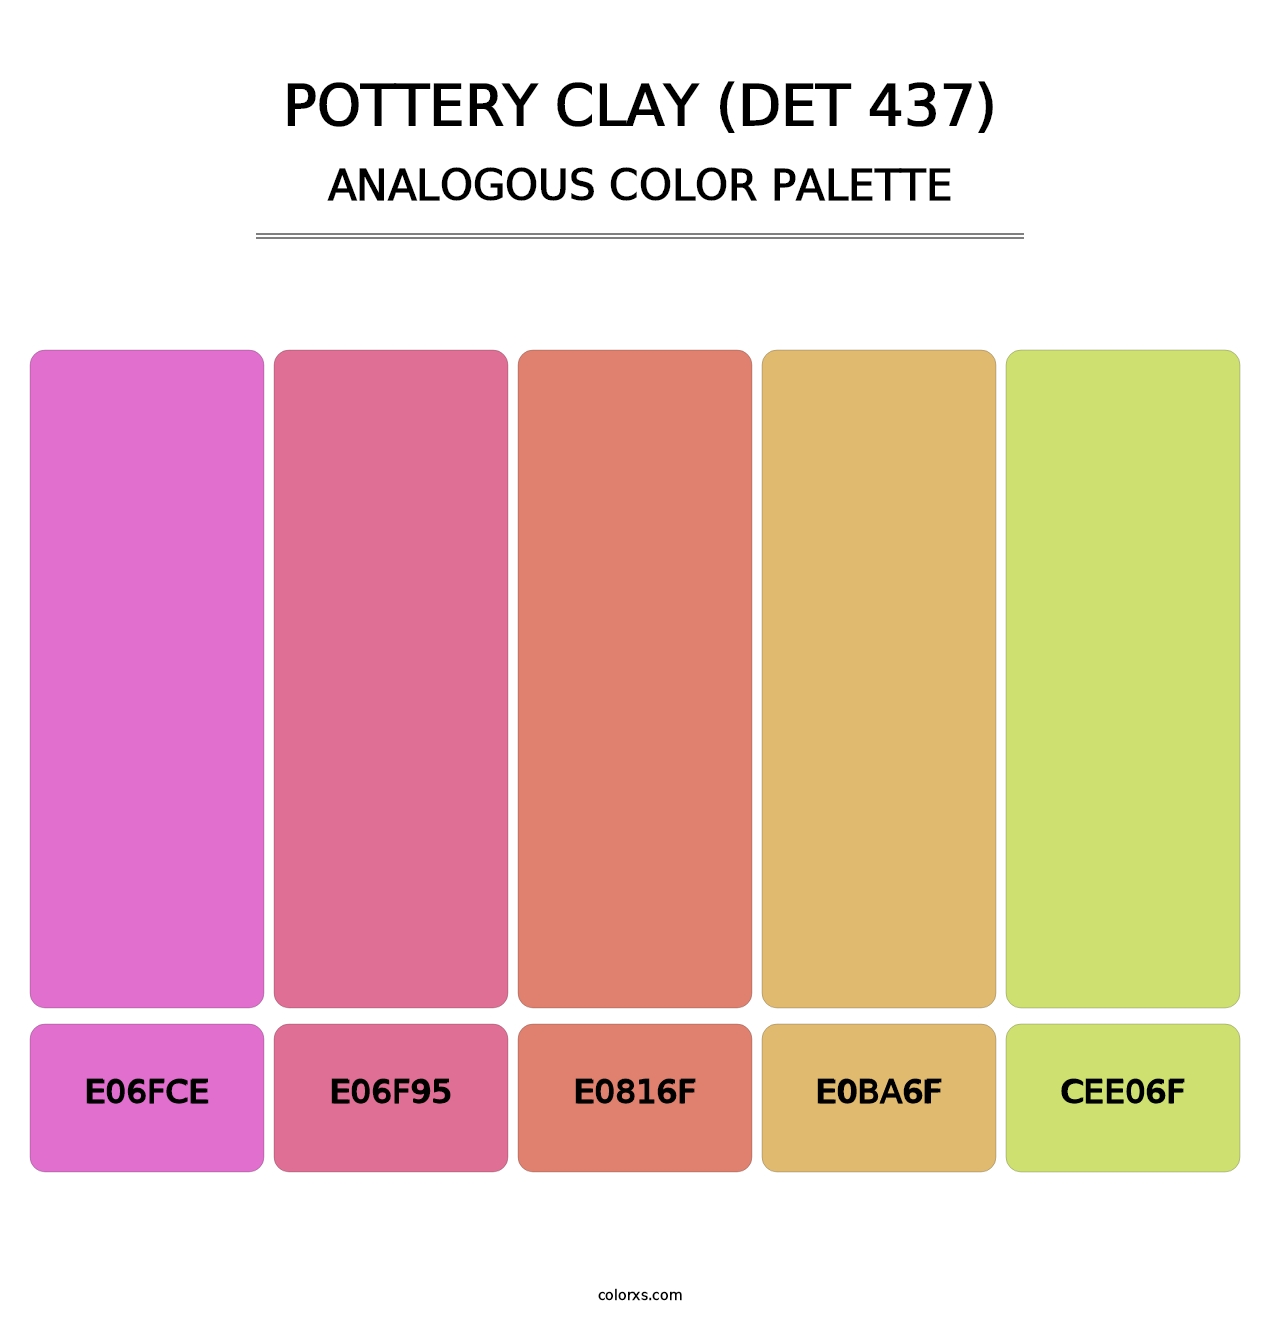 Pottery Clay (DET 437) - Analogous Color Palette